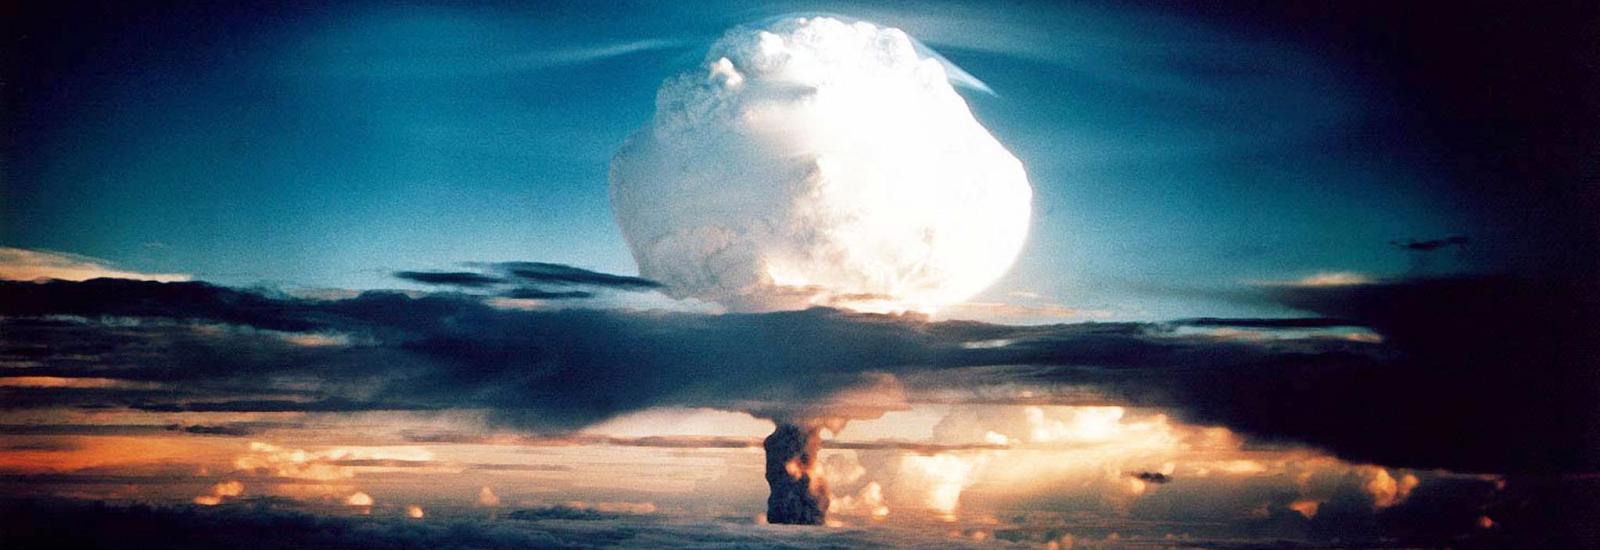 Teste nuclear nas Ilhas Marshall